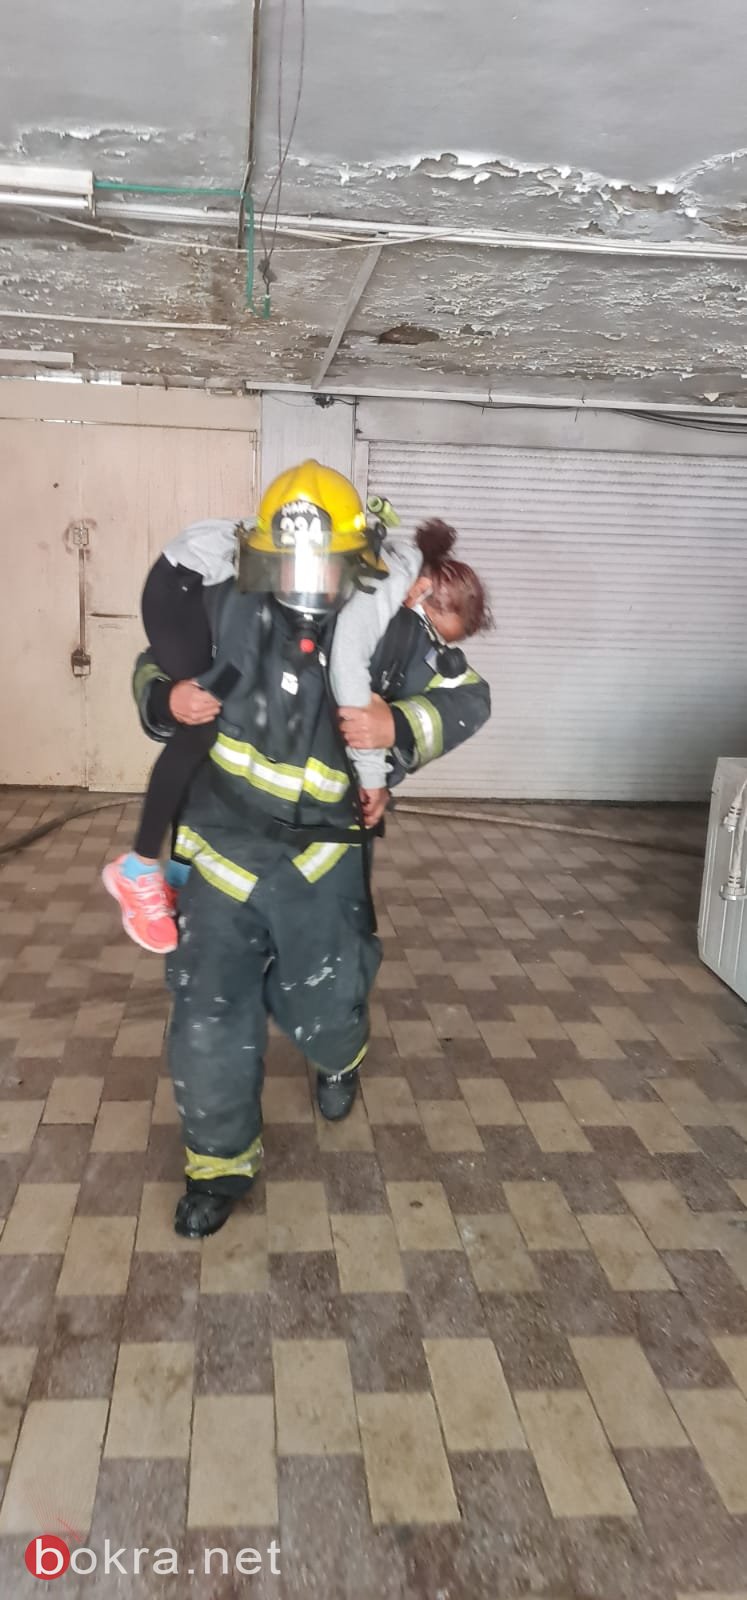 حيفا: اندلاع حريق داخل مبنى، وتخليص أم وأطفالها الثلاثة-2